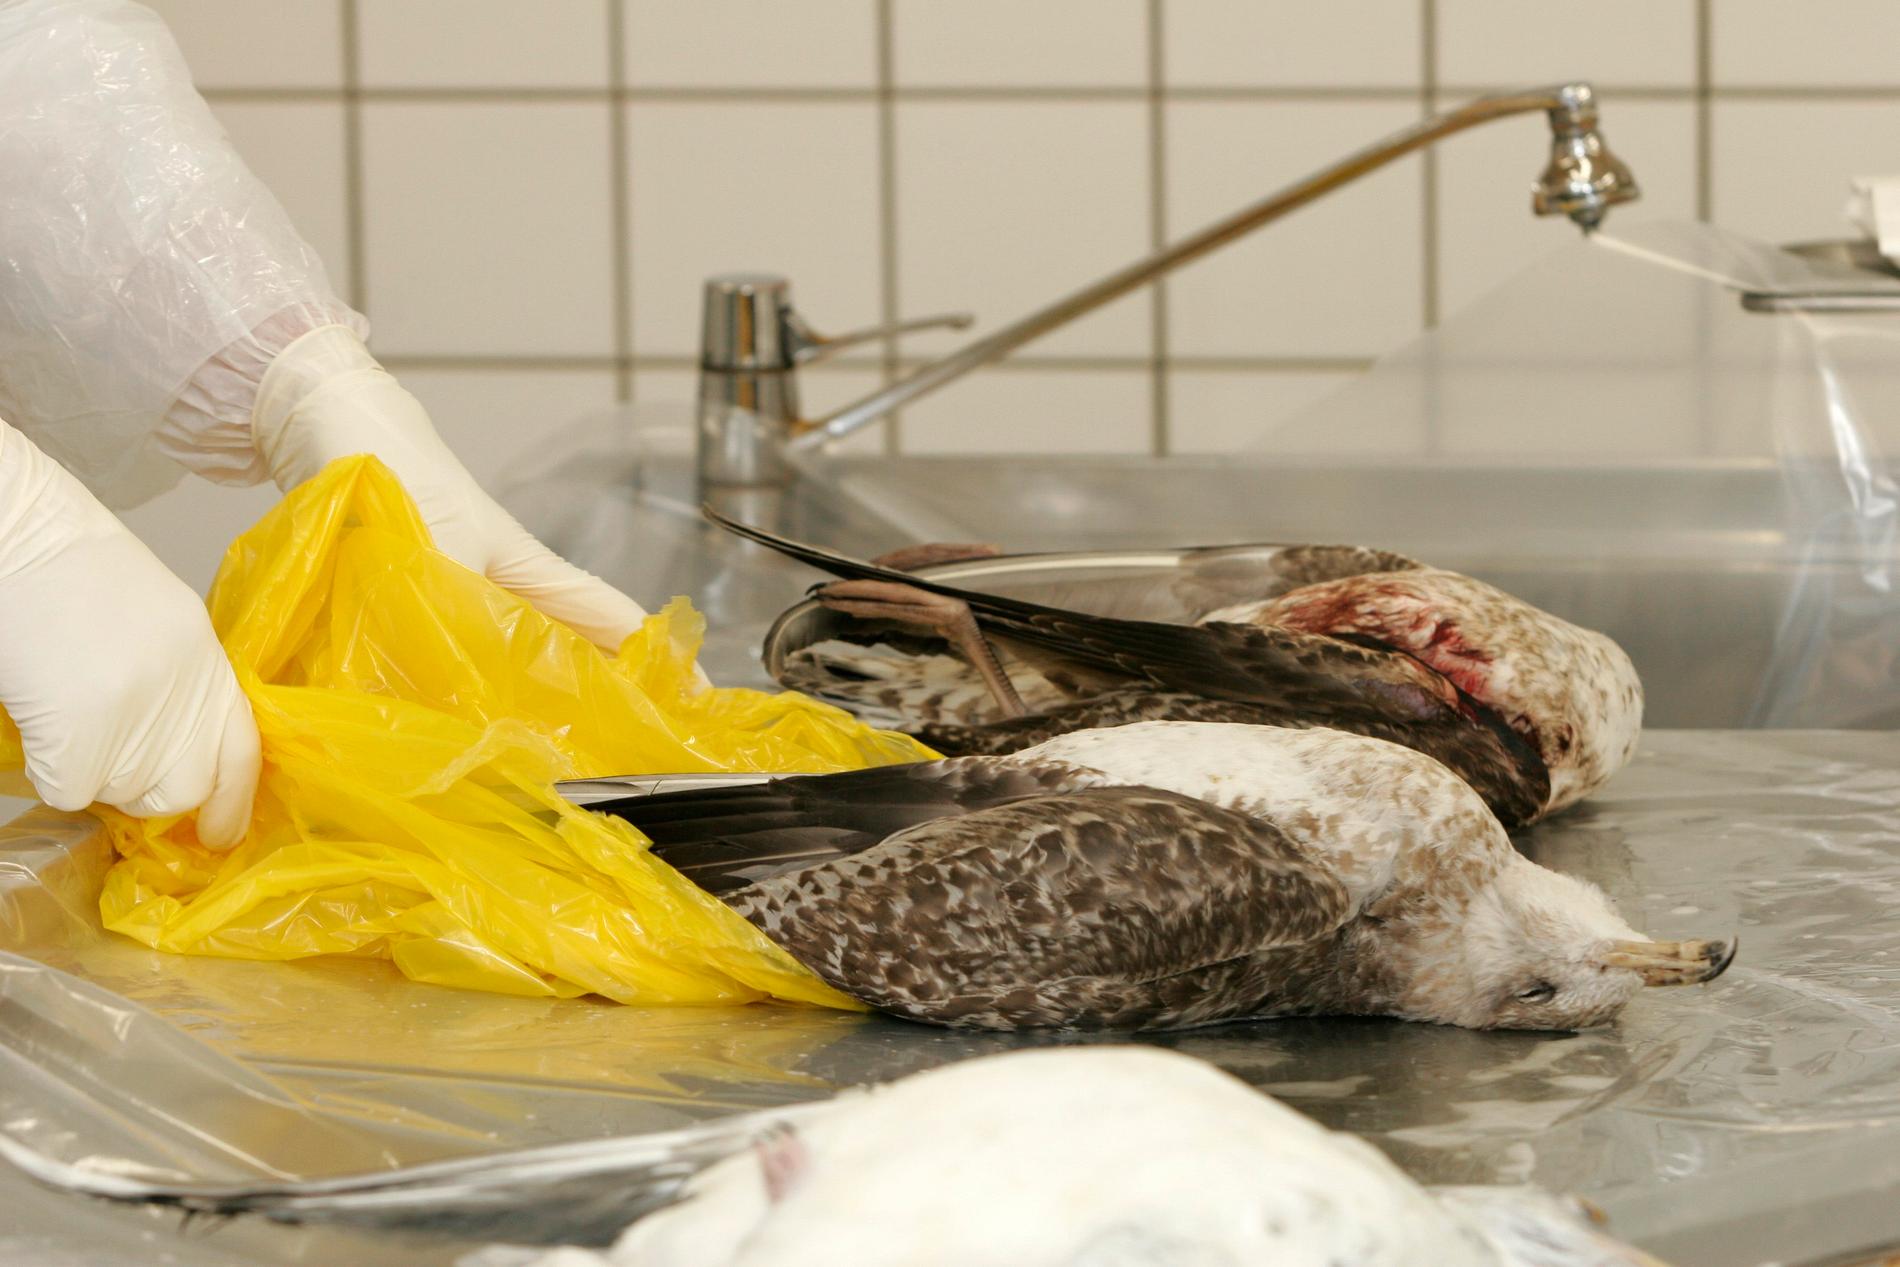 Fågelinfluensaviruset, H5N1, sprids vanligtvis främst bland fåglar, men allt fler rapporter har kommit om smittspridning bland däggdjur. Arkivbild.